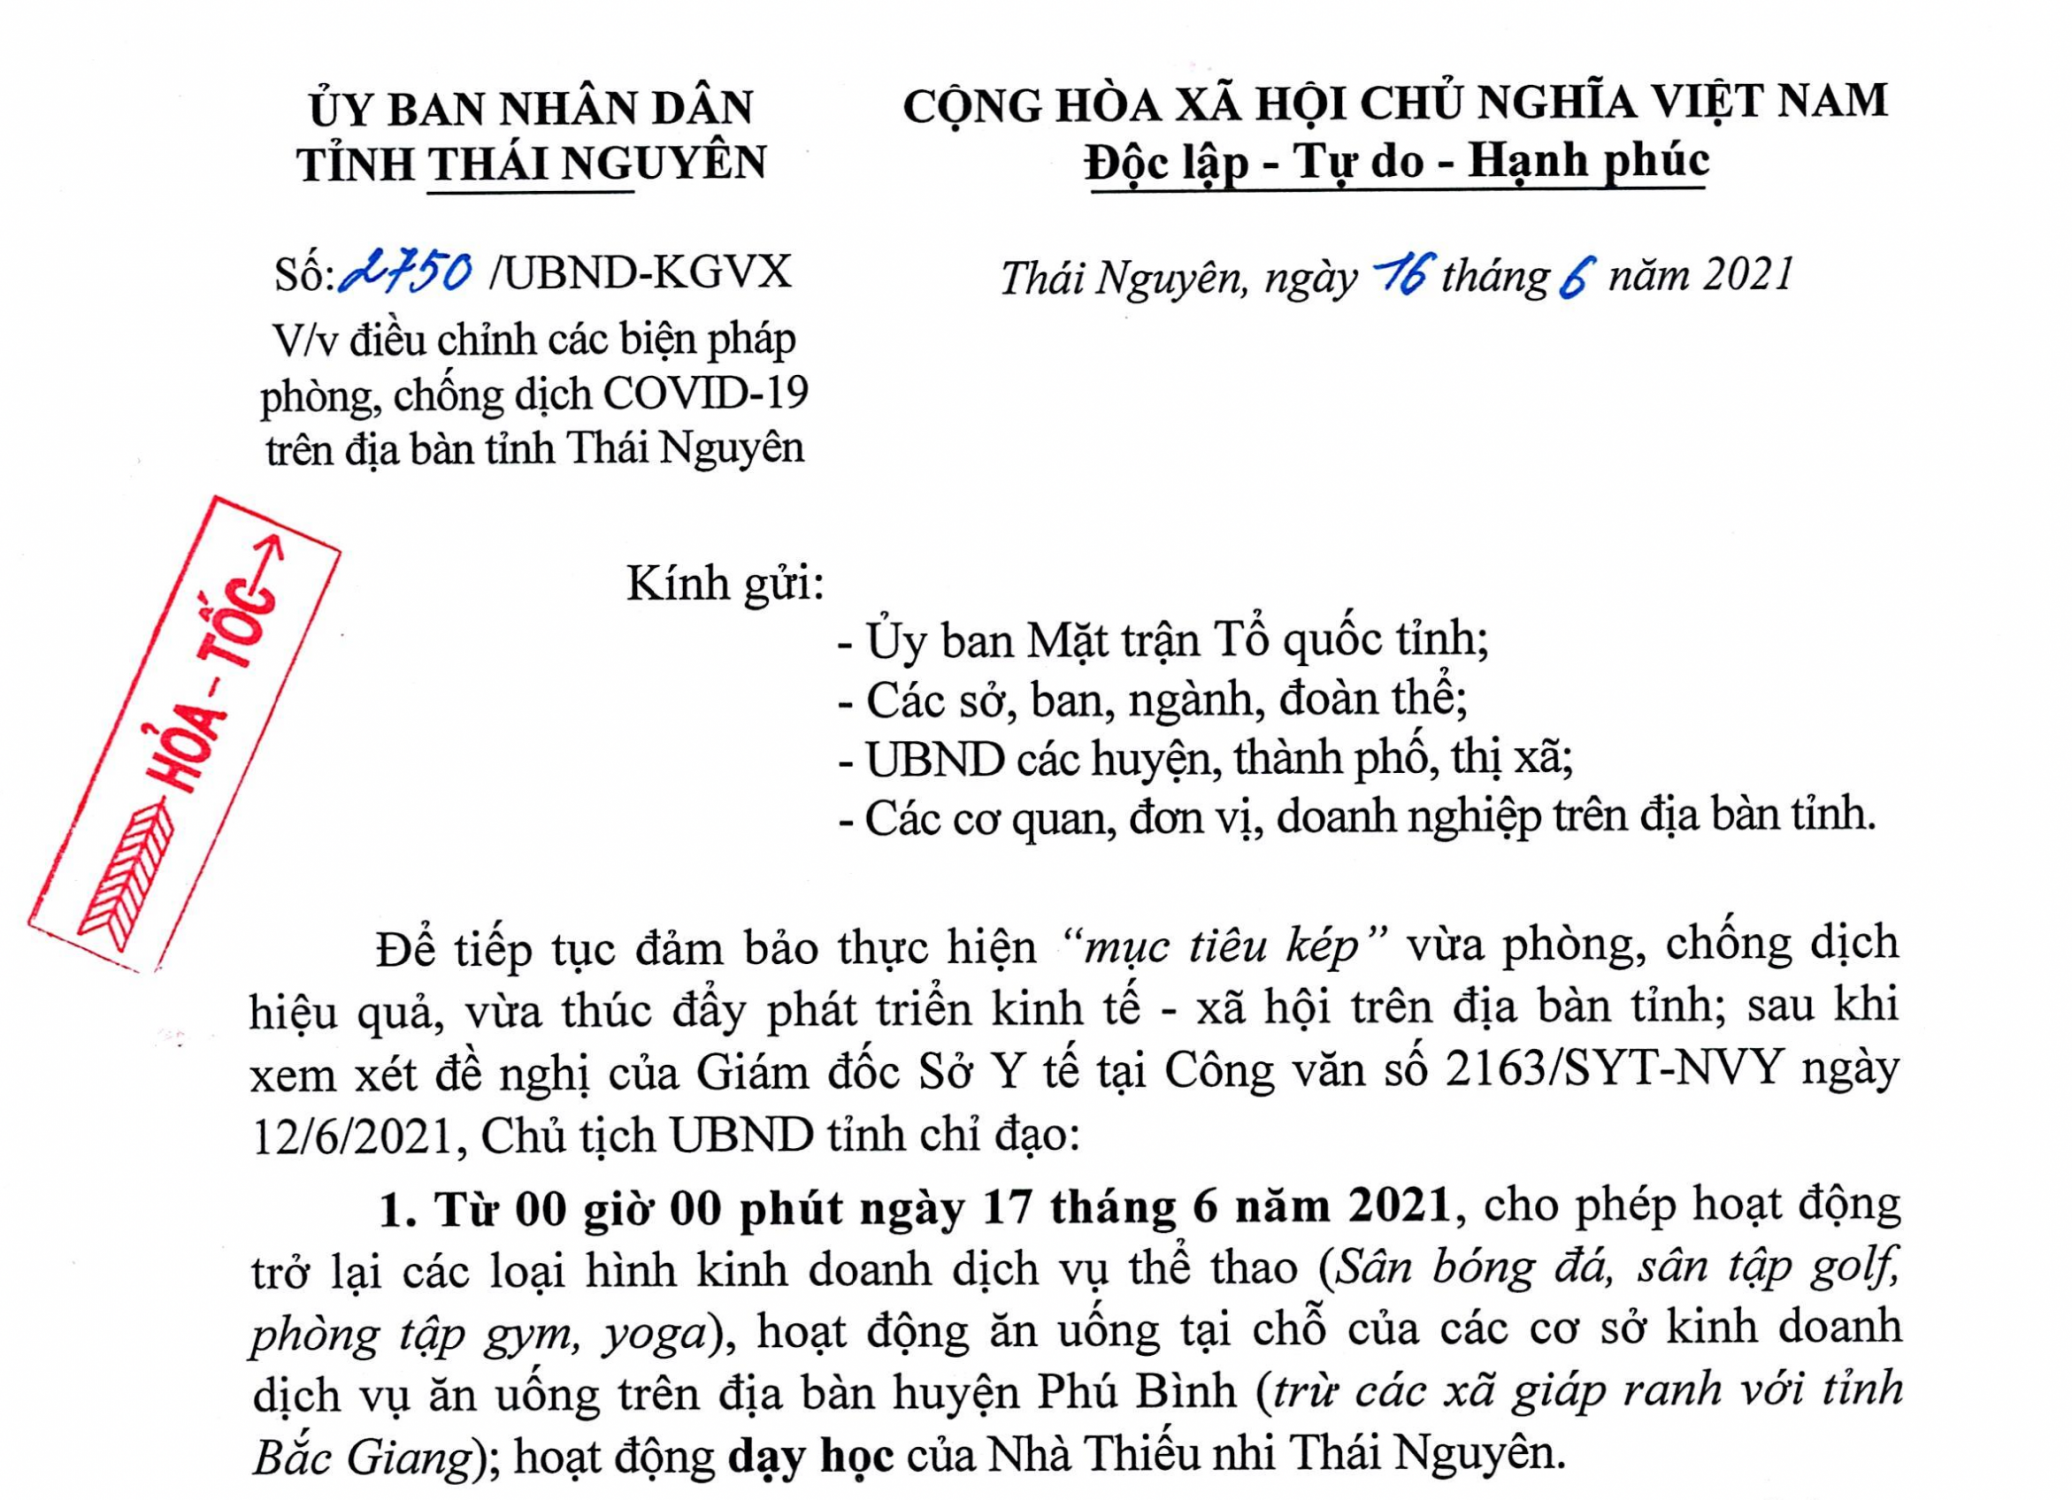 Điều chỉnh các biện pháp phòng, chống dịch Covid-19 trên địa bàn tỉnh Thái Nguyên